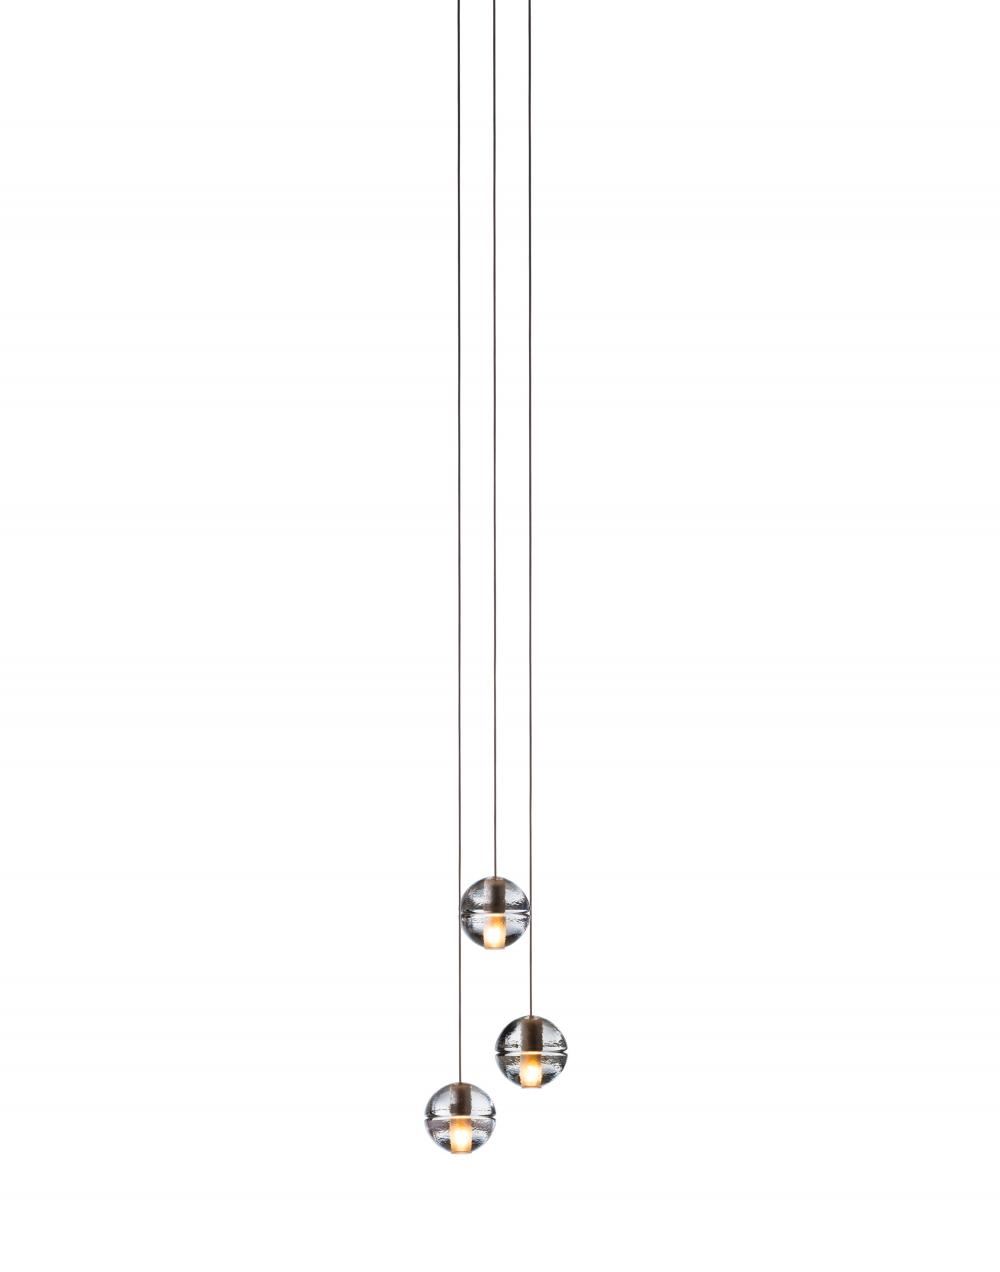 Bocci Series 14 Pendant 3 9 Pieces 3 Ball 10w Xenon Clear Designer Pendant Lighting